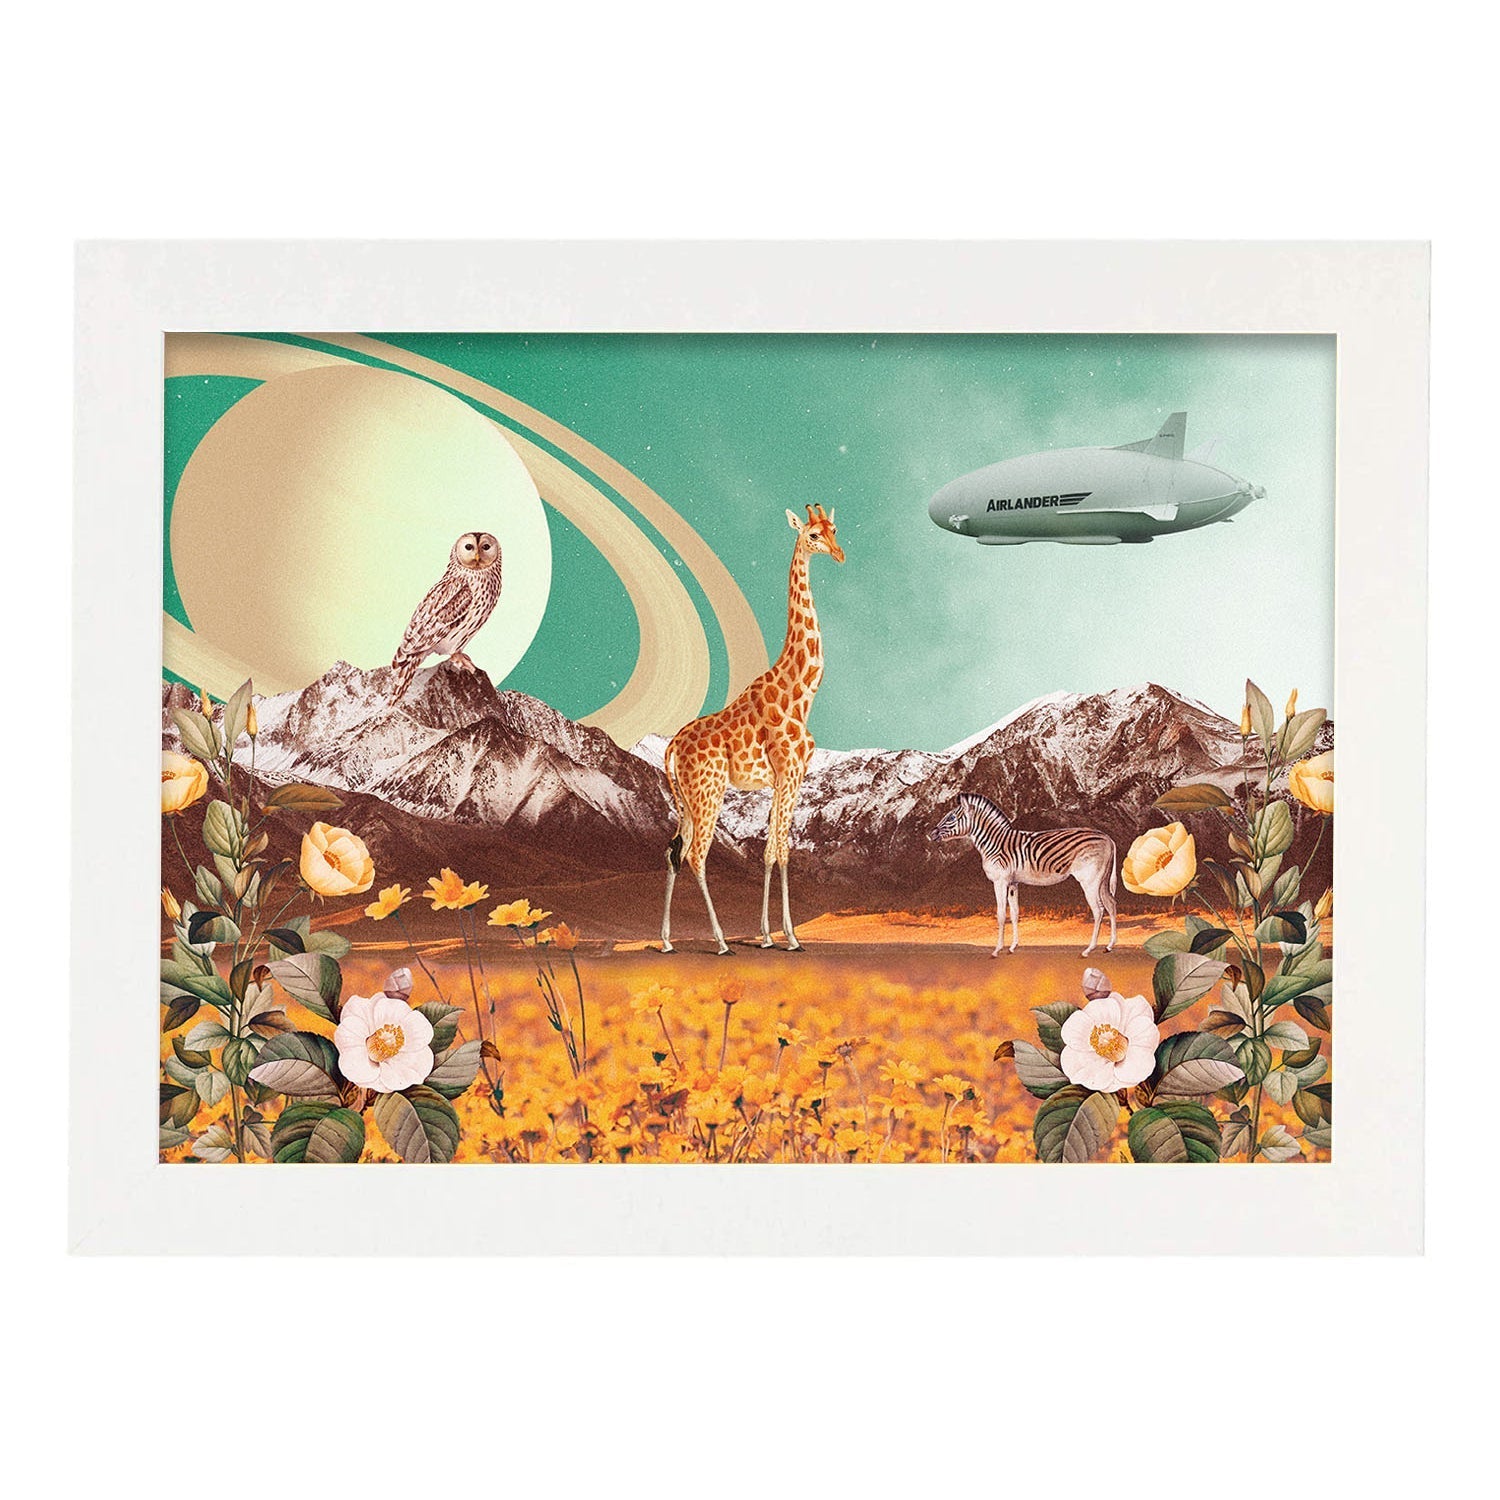 Lamina artistica decorativa con ilustración de Saturn estilo Collage-Artwork-Nacnic-A4-Marco Blanco-Nacnic Estudio SL